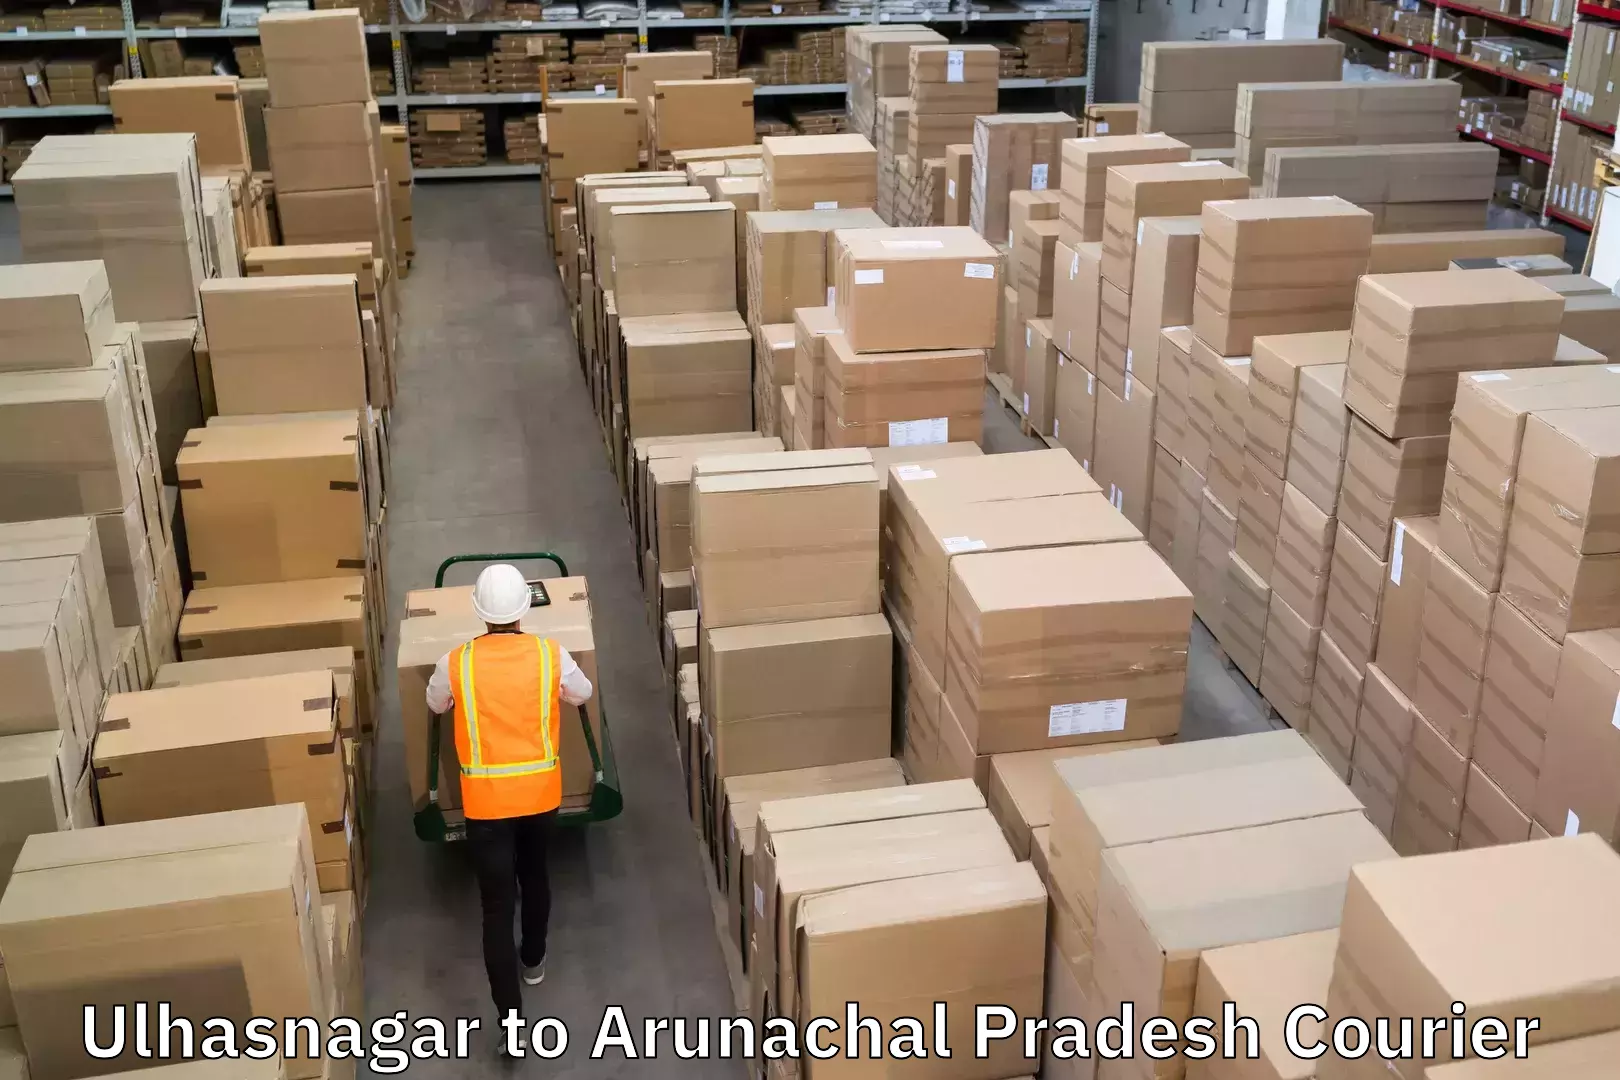 24/7 courier service Ulhasnagar to Arunachal Pradesh